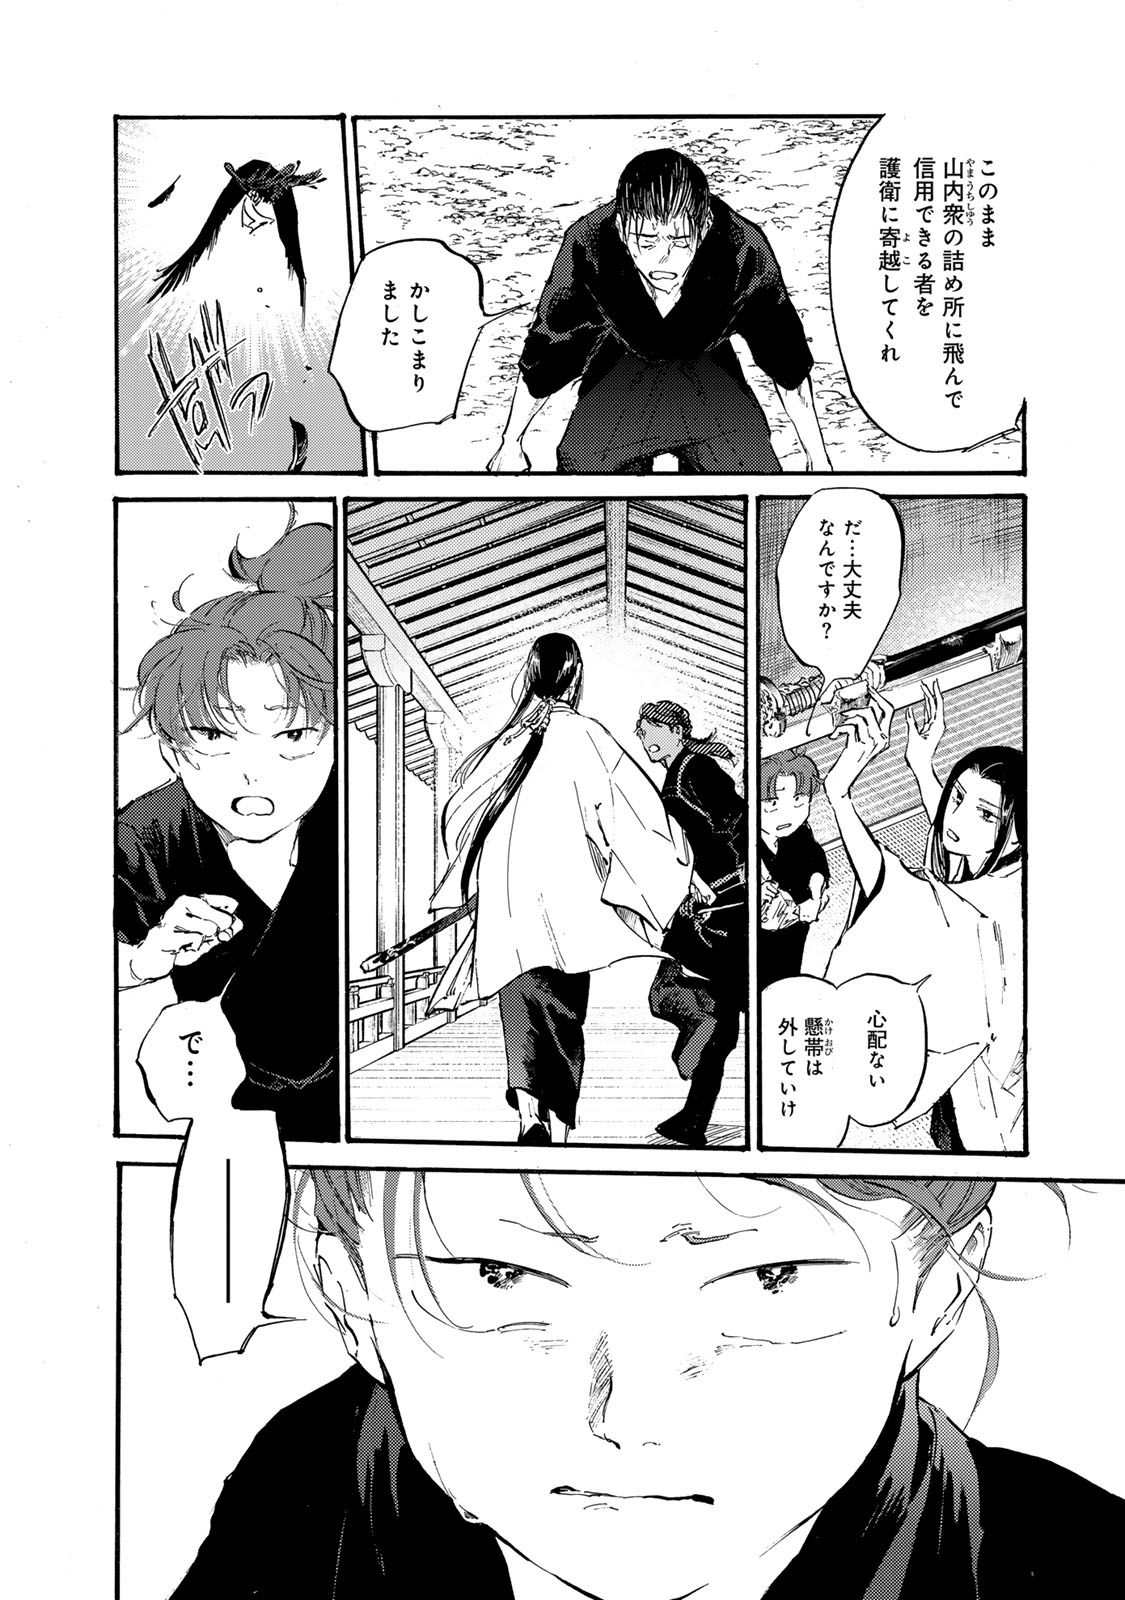 Karasu wa Aruji wo Erabanai - Chapter 39 - Page 18